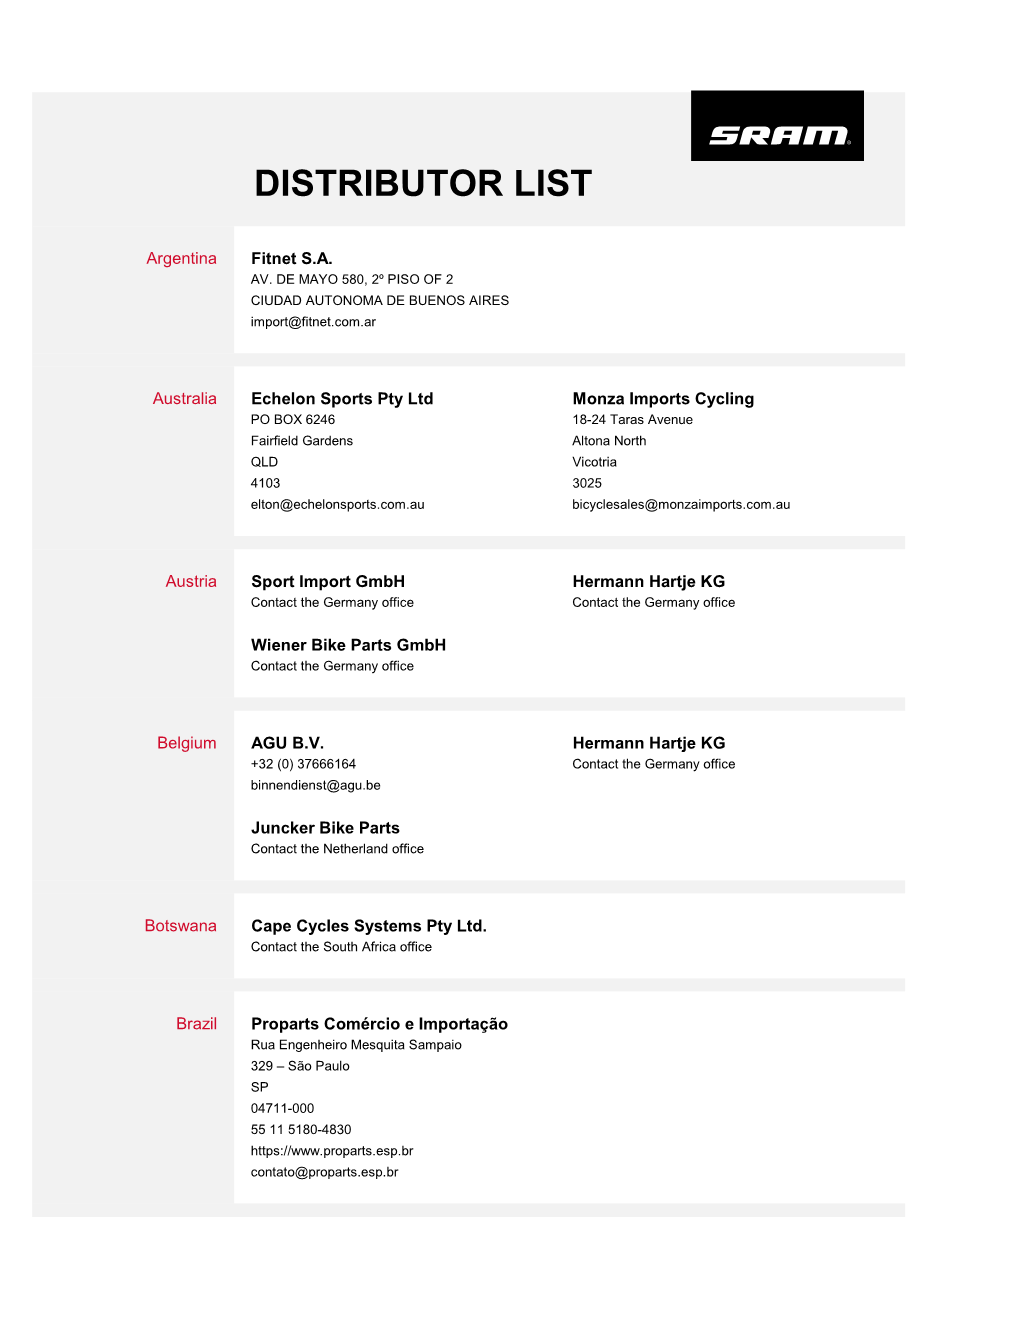 Distributor List